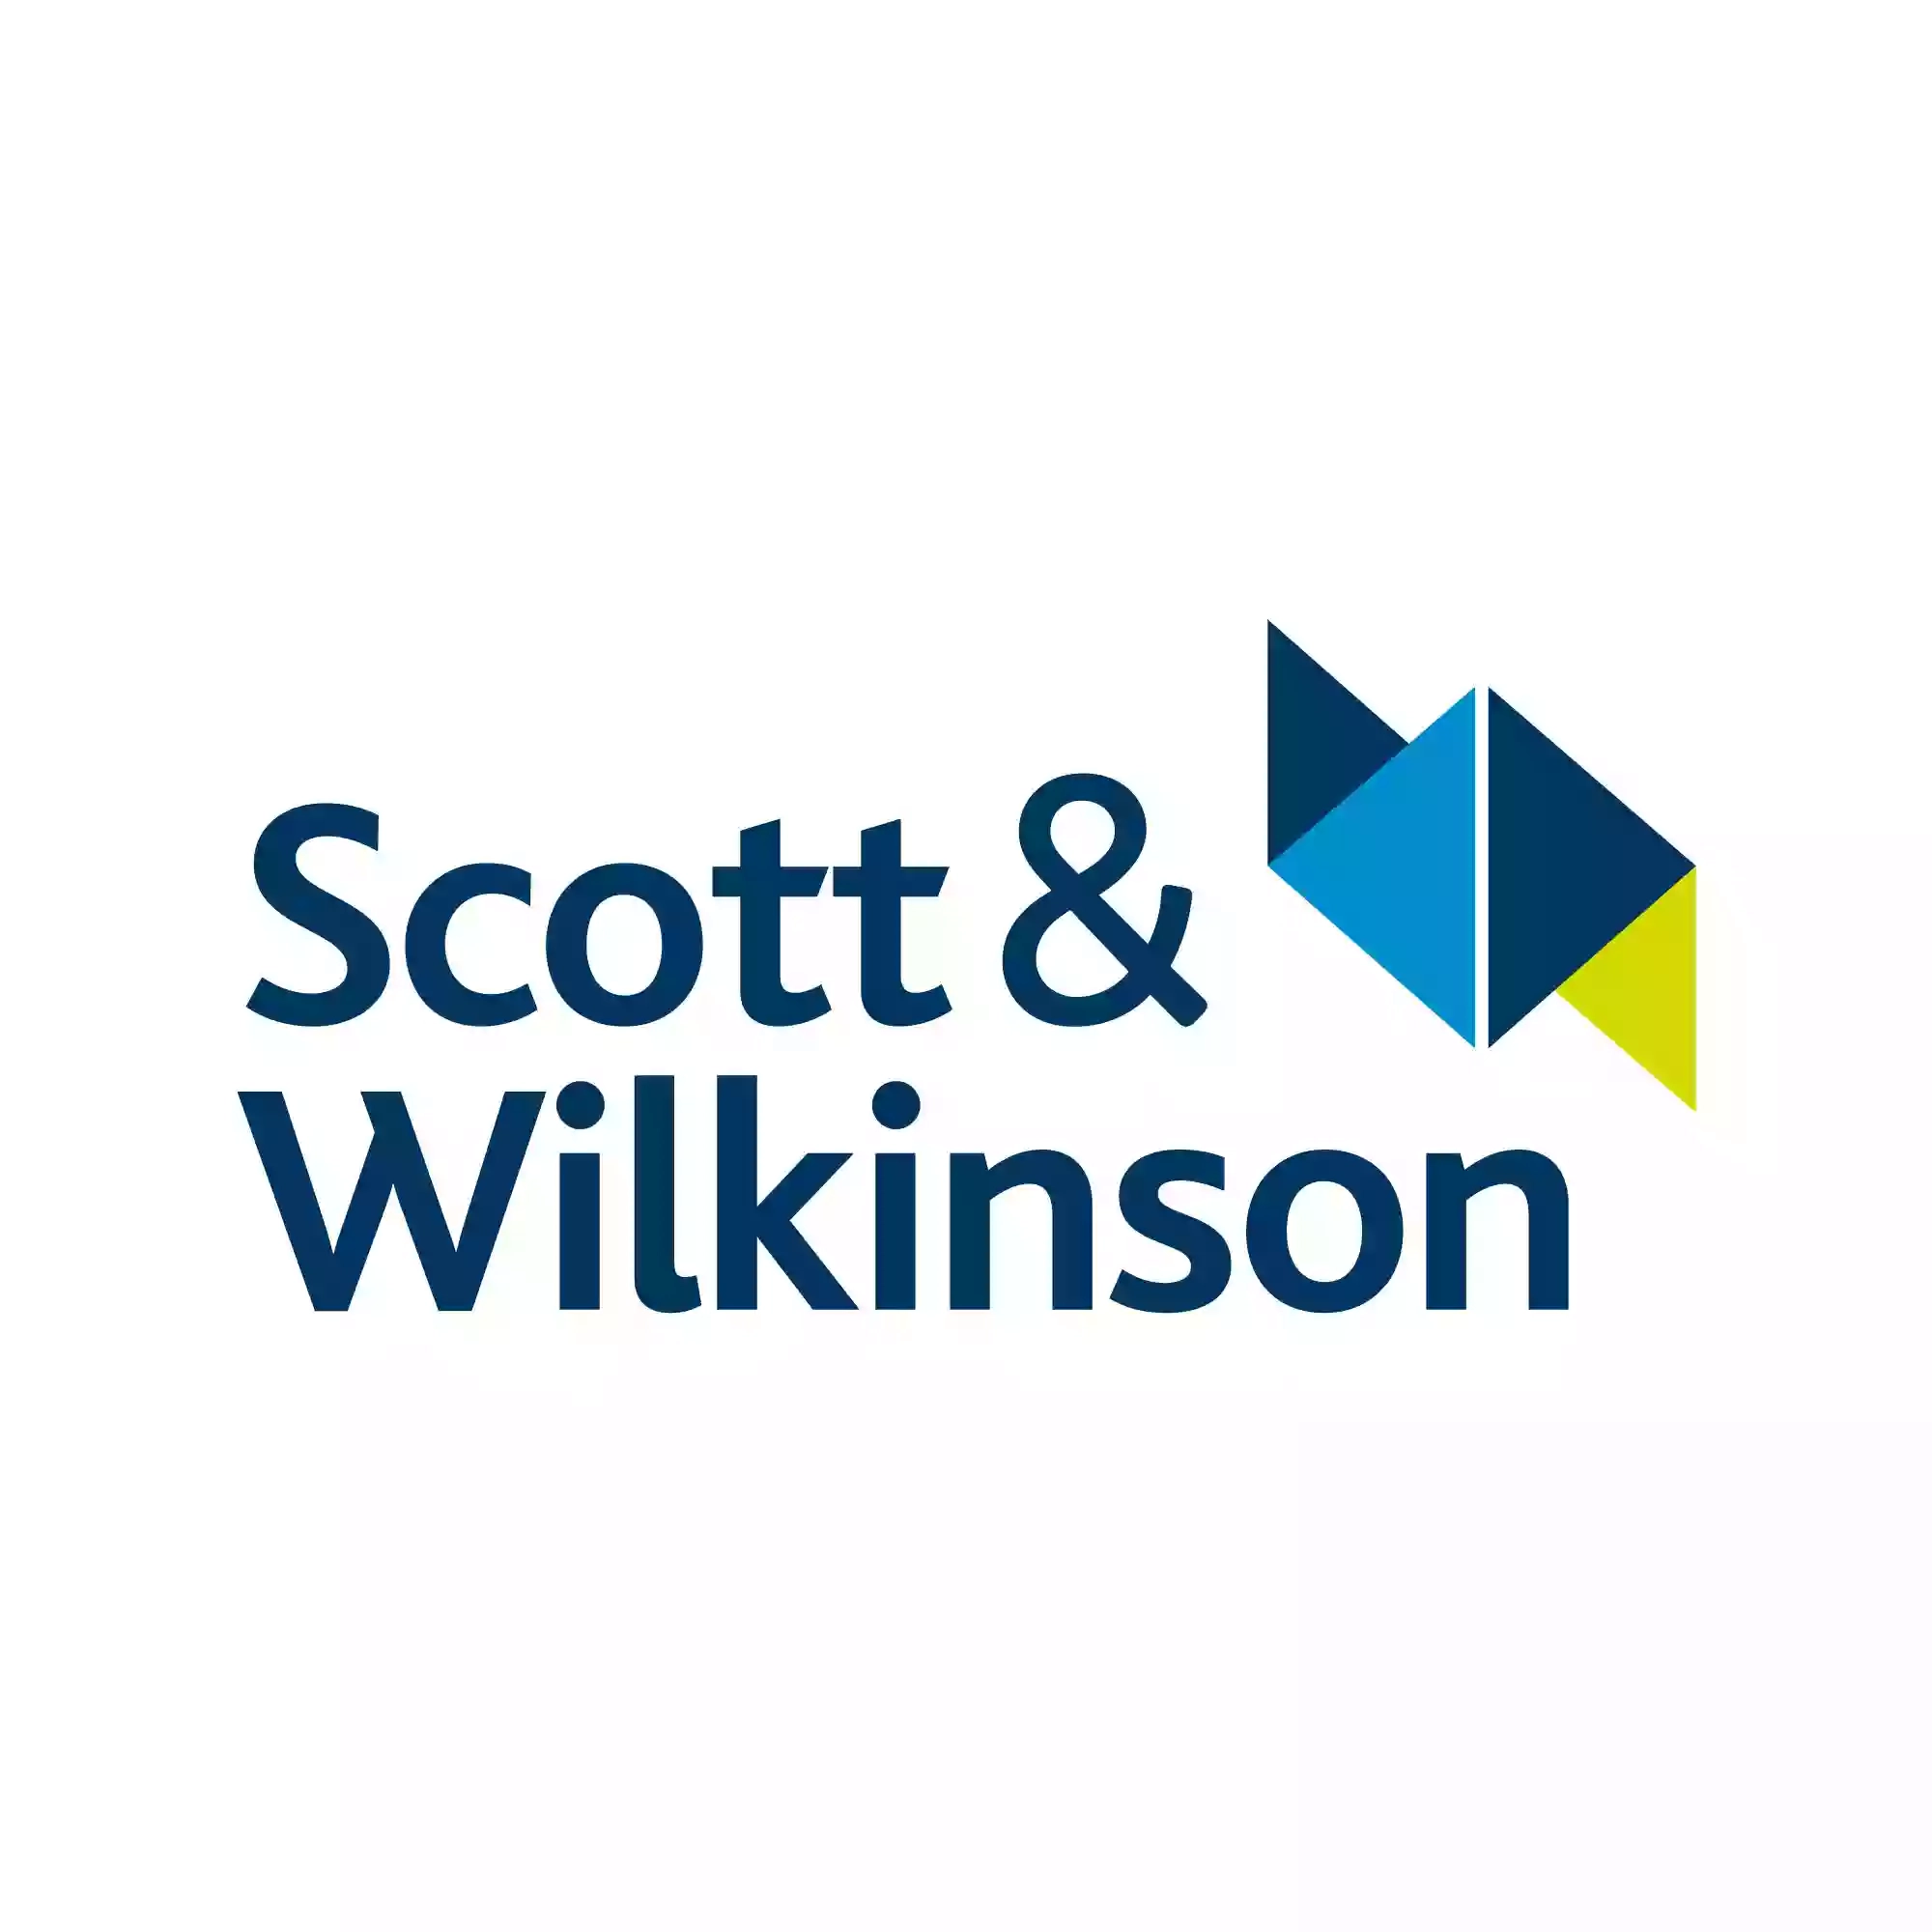 Scott & Wilkinson